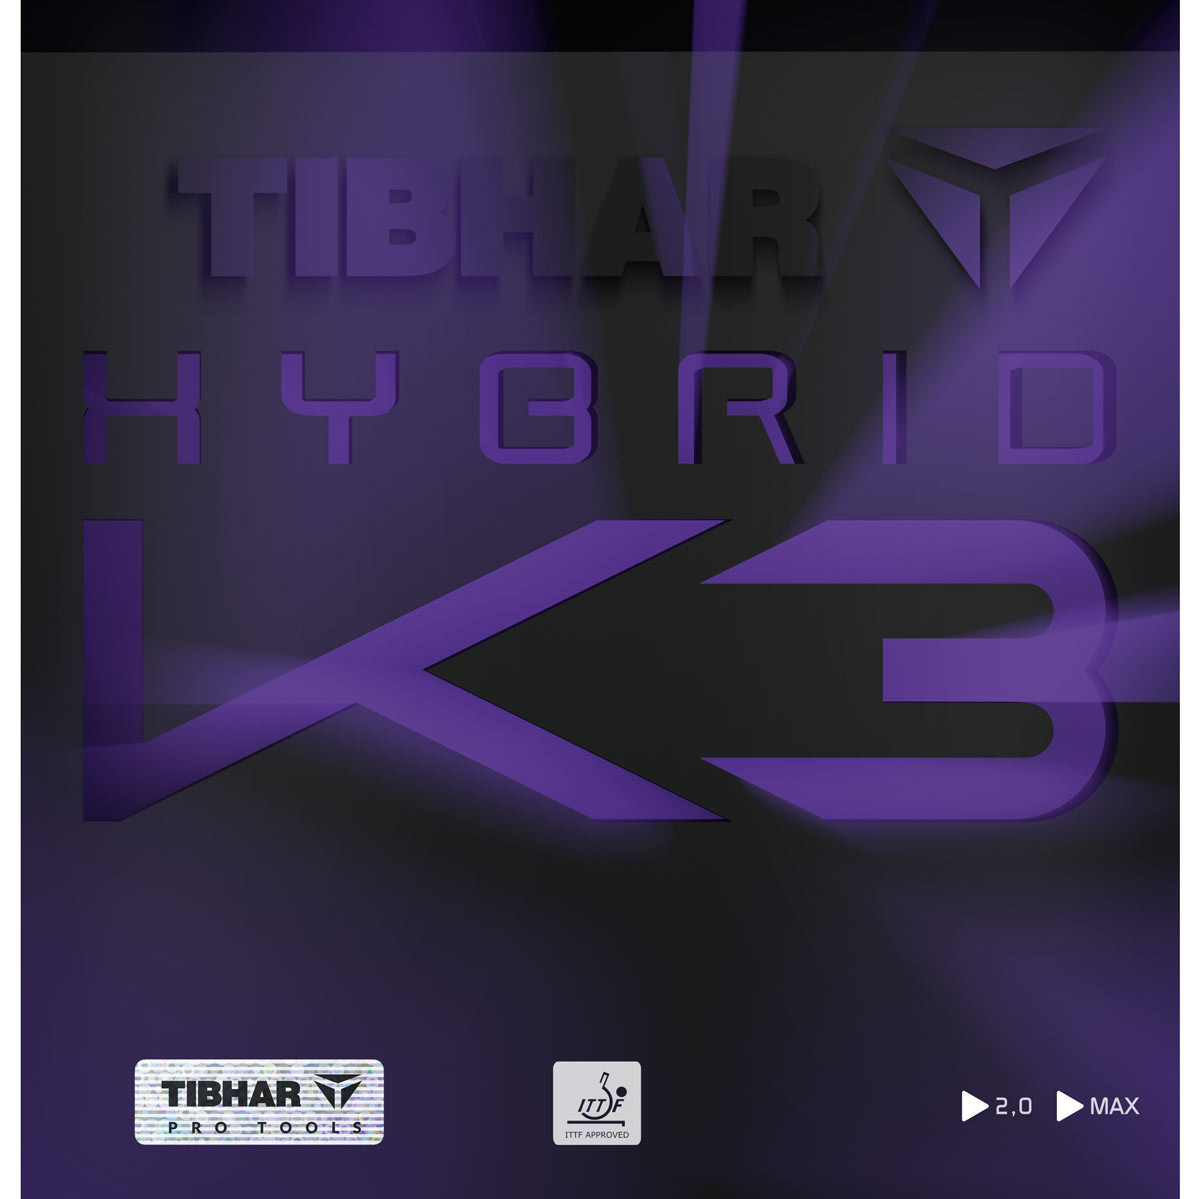 Tibhar hybrid k3 openbook gift